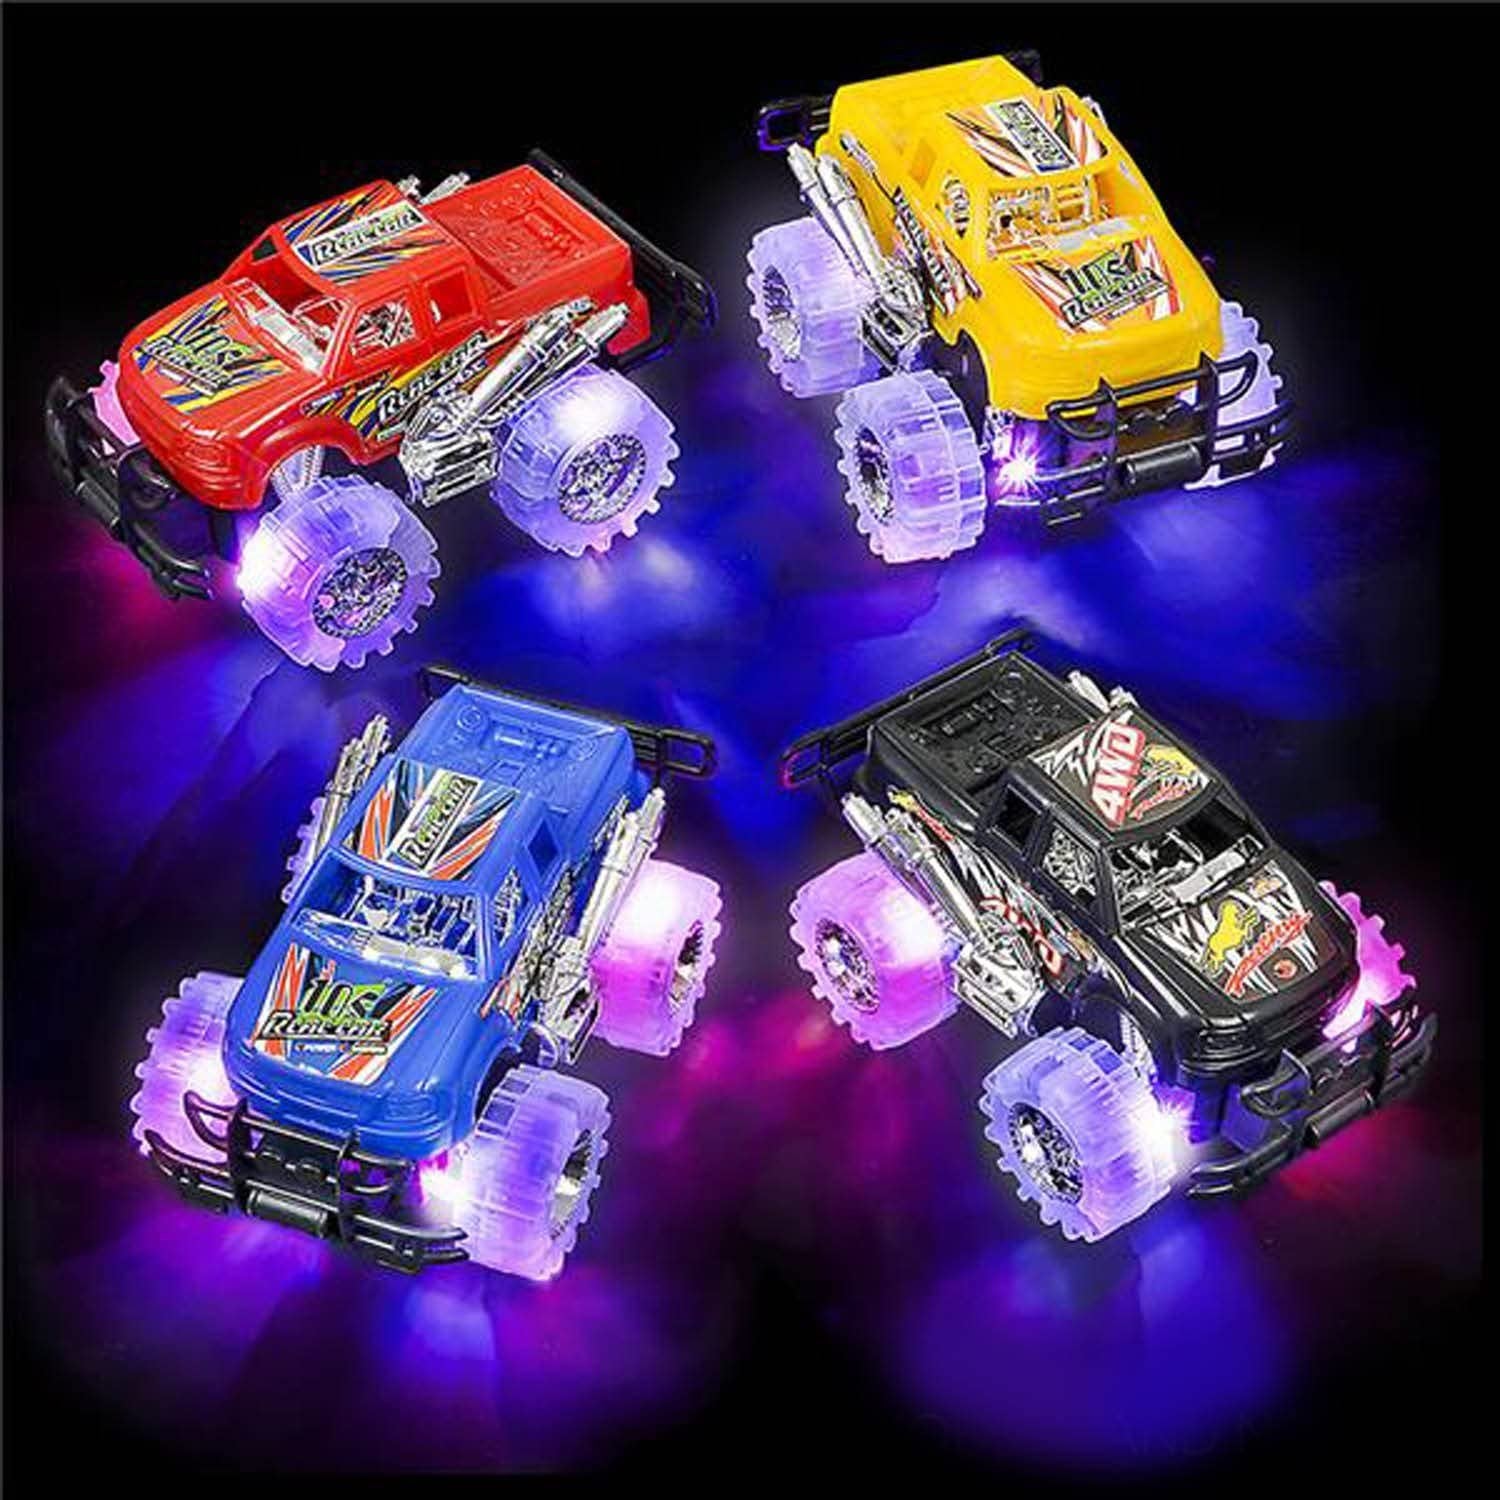 2 Light Up Monster Trucks Set, 6" Push n Go Monster Trucks with Flashing LED - 2 Pack